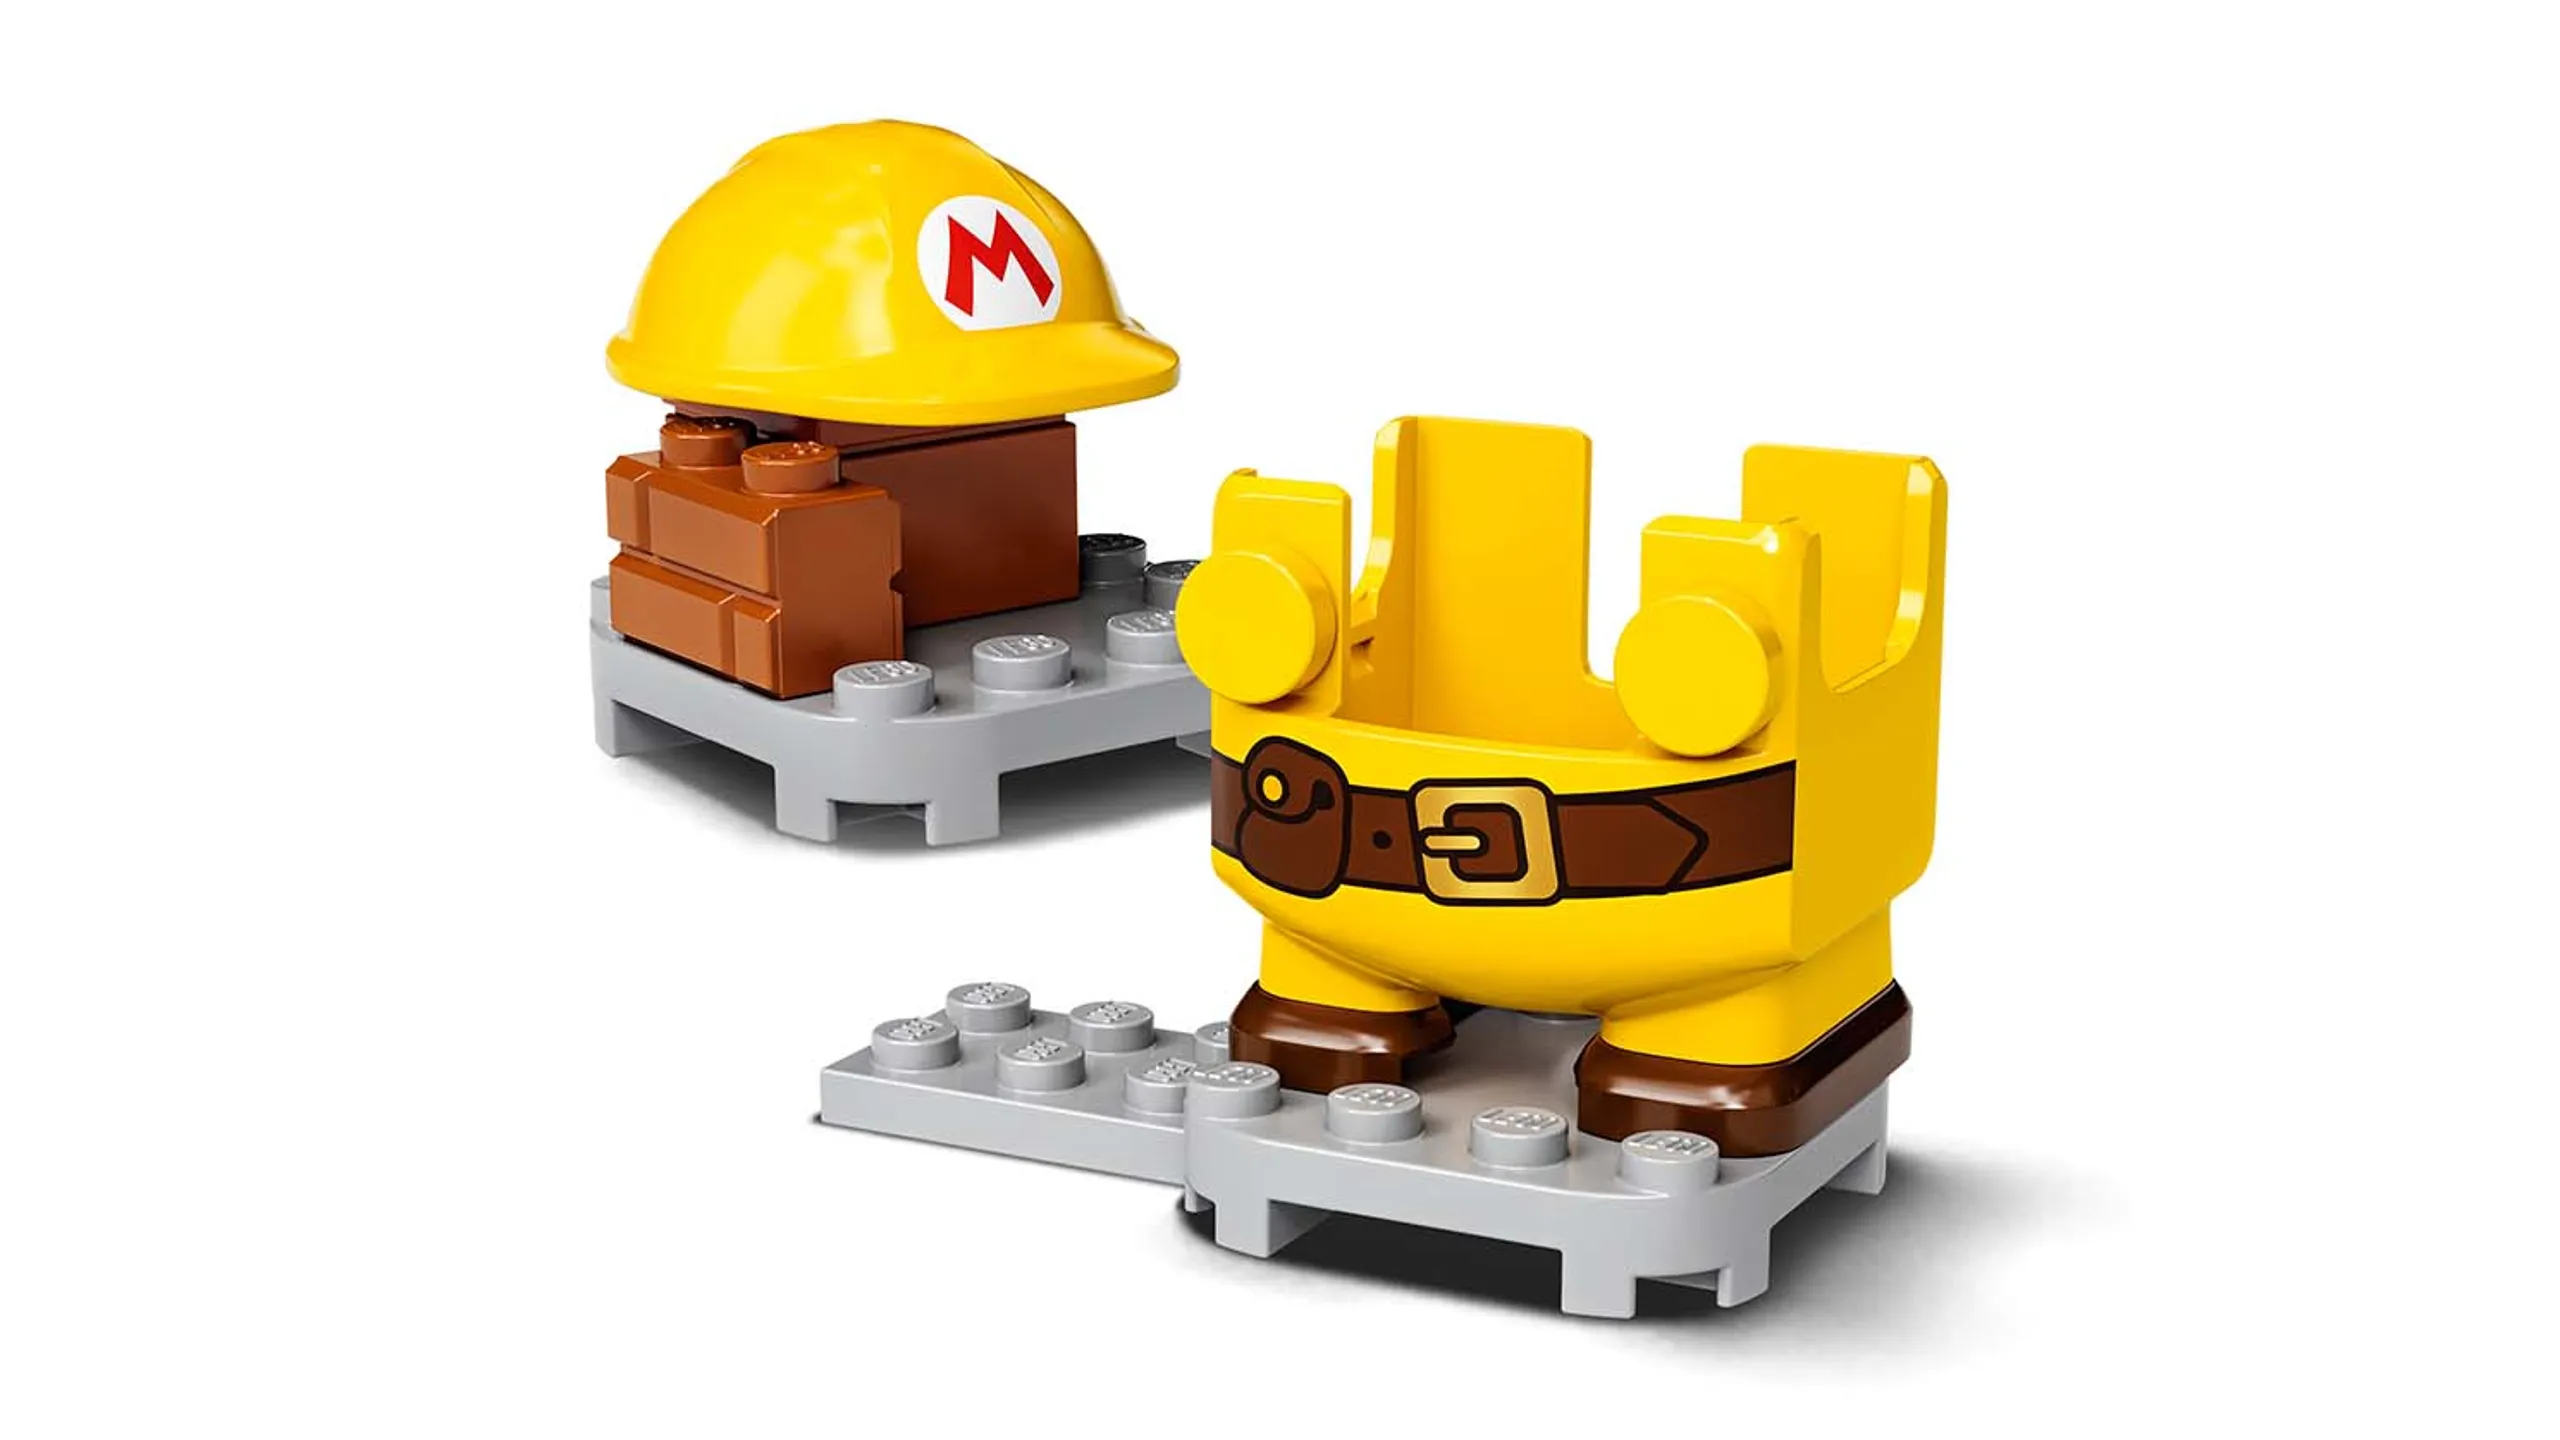 LEGO Super Mario è realtà ed è una linea di giocattoli per bambini